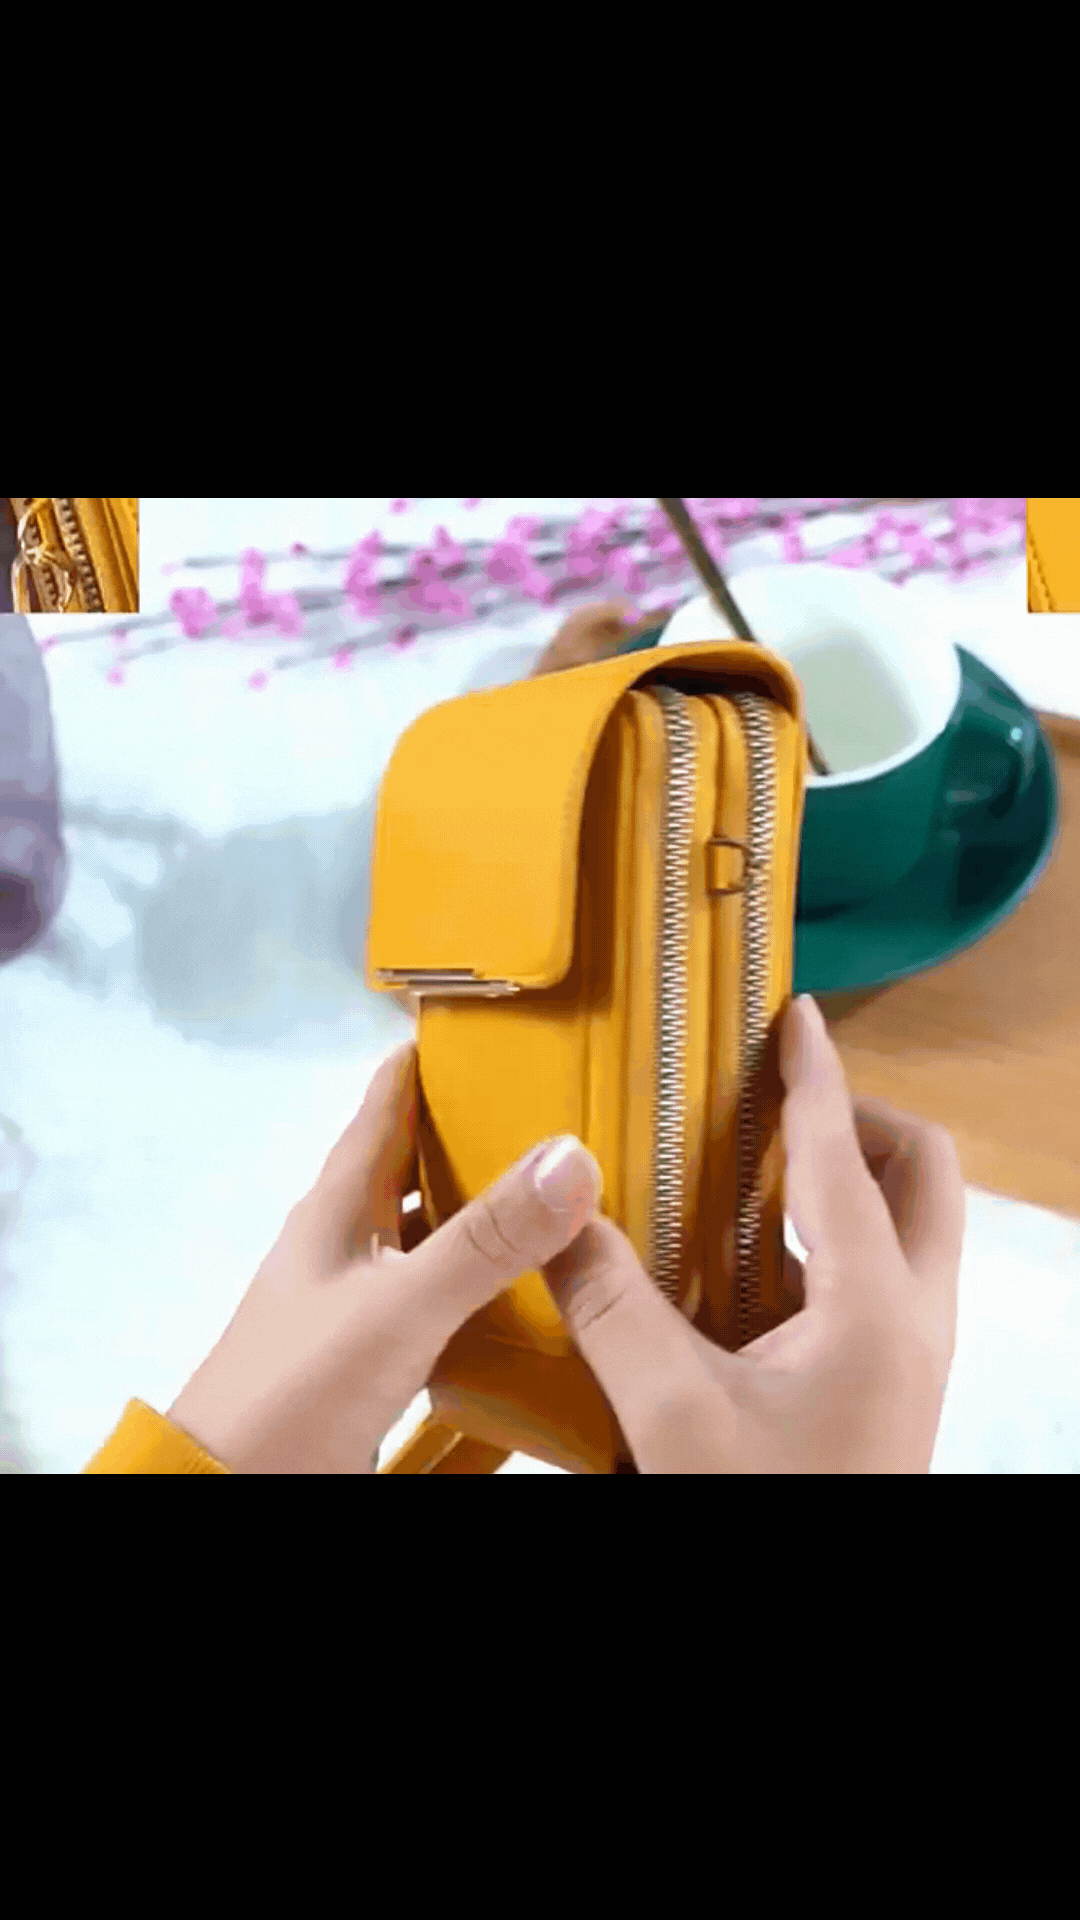 Femmes sacs en cuir souple portefeuilles écran tactile téléphone portable sac à main bandoulière épaule